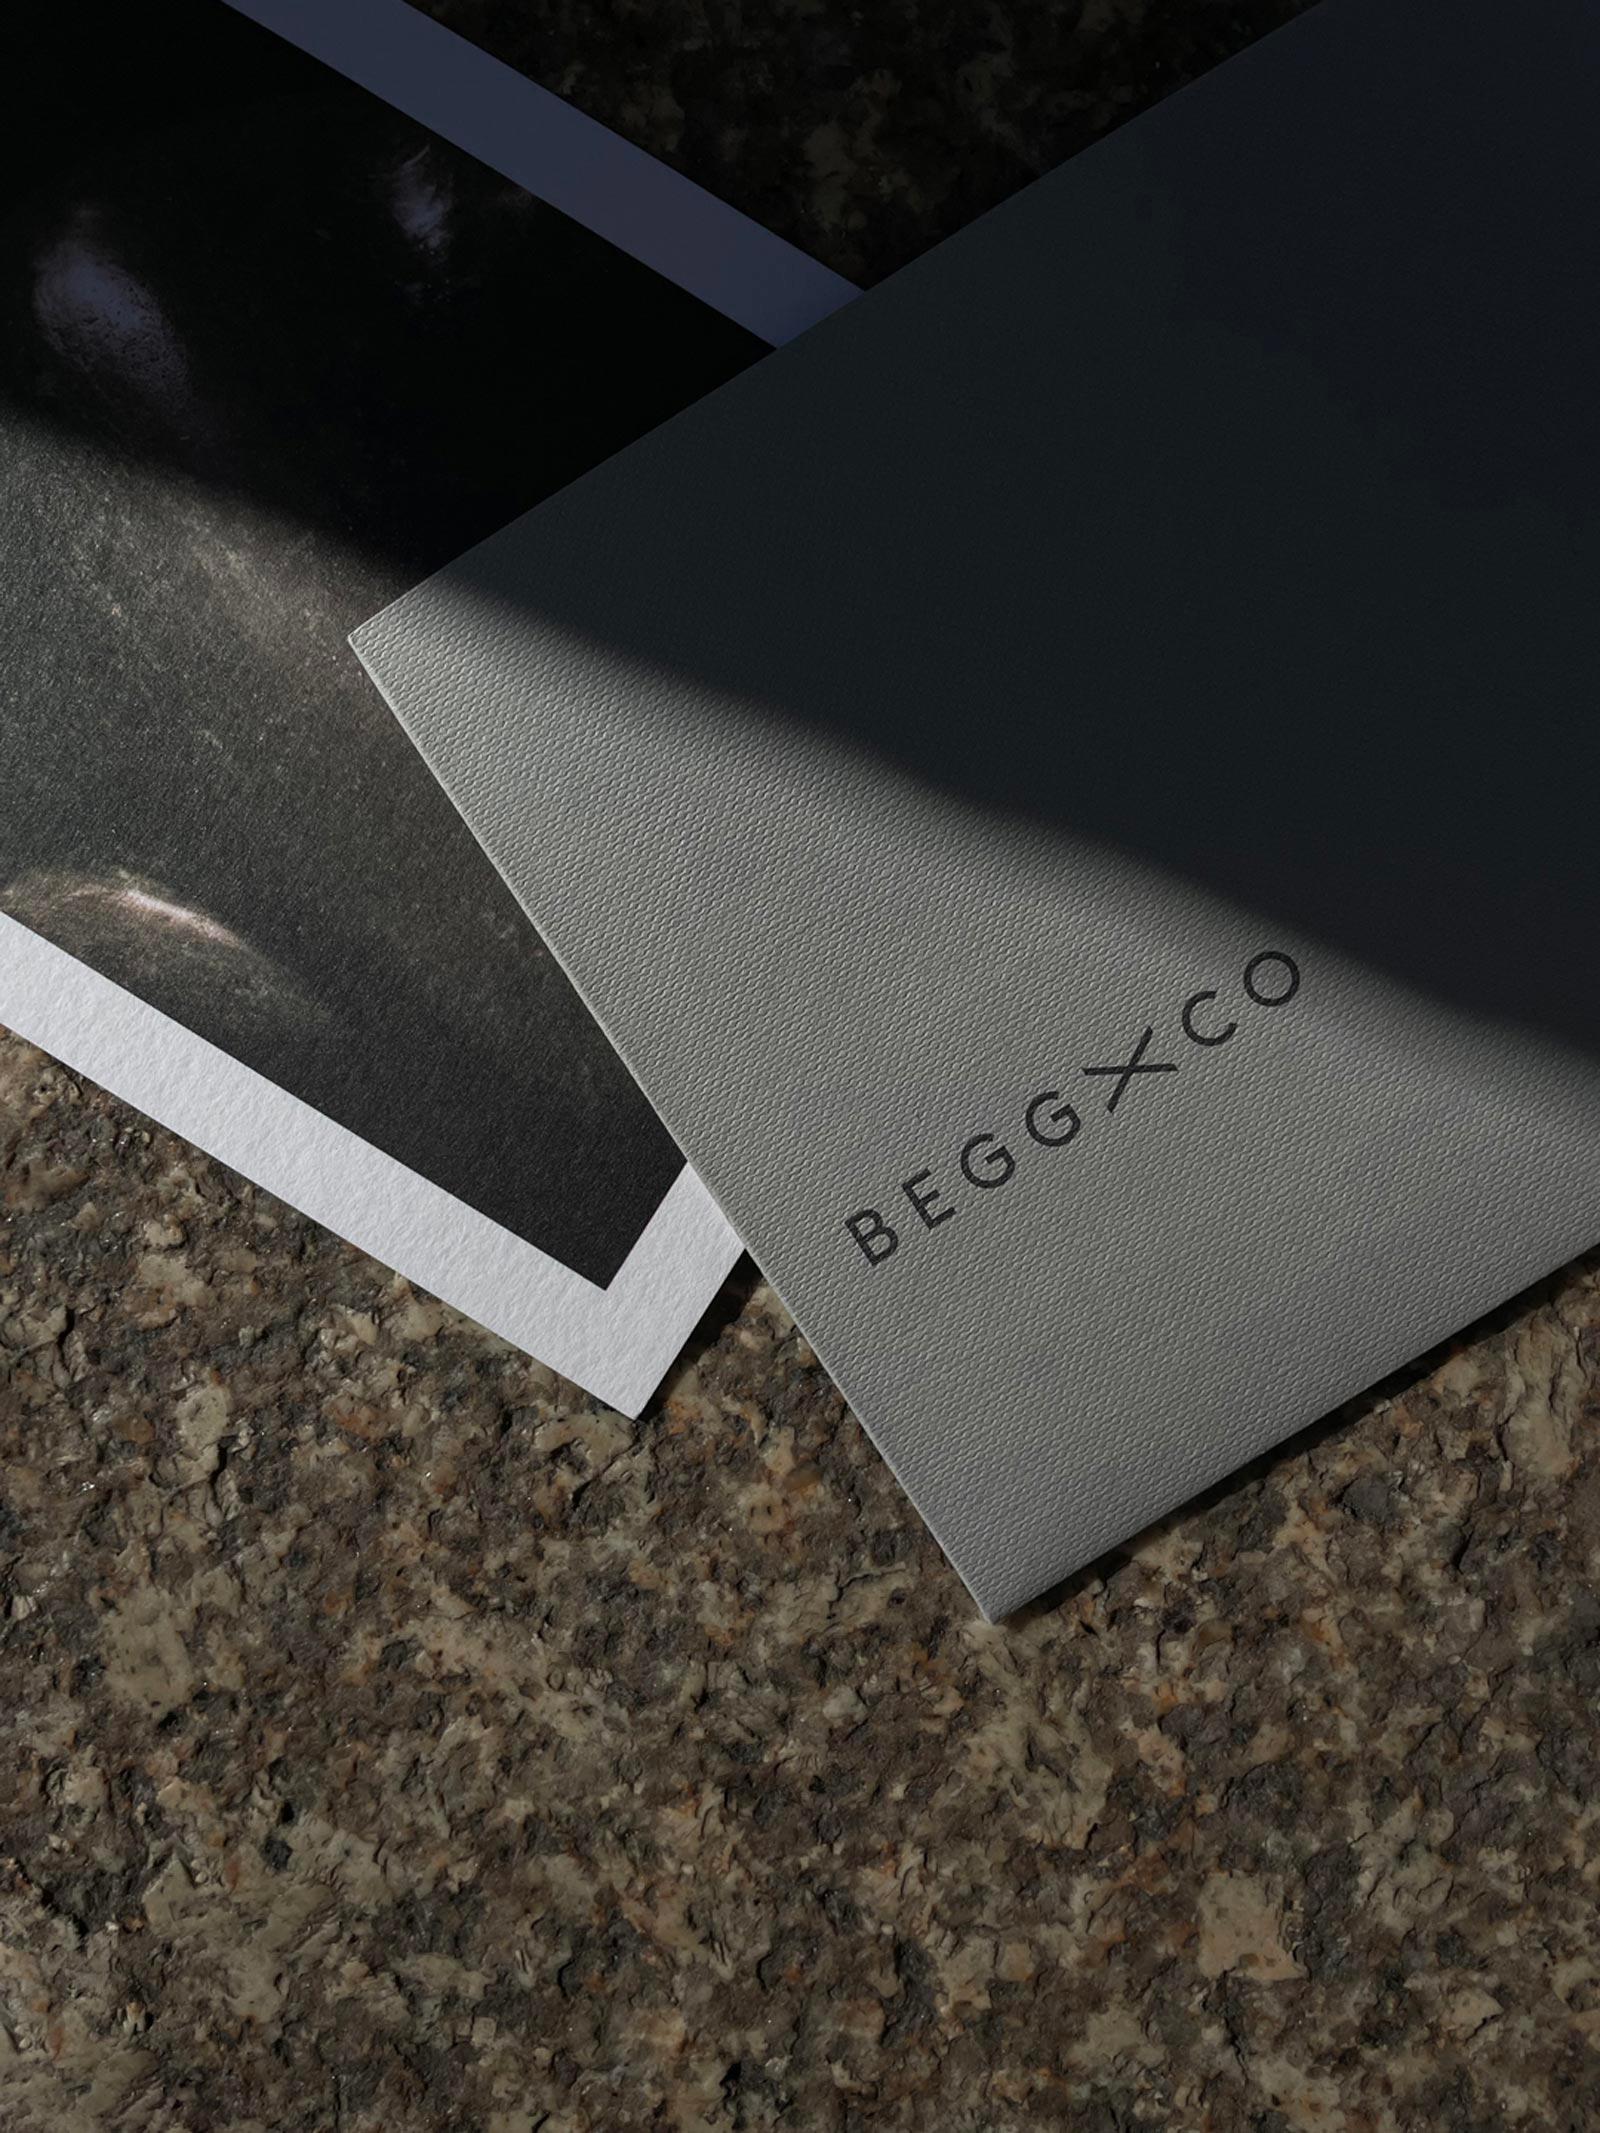 LWCO—Begg–Packaging03